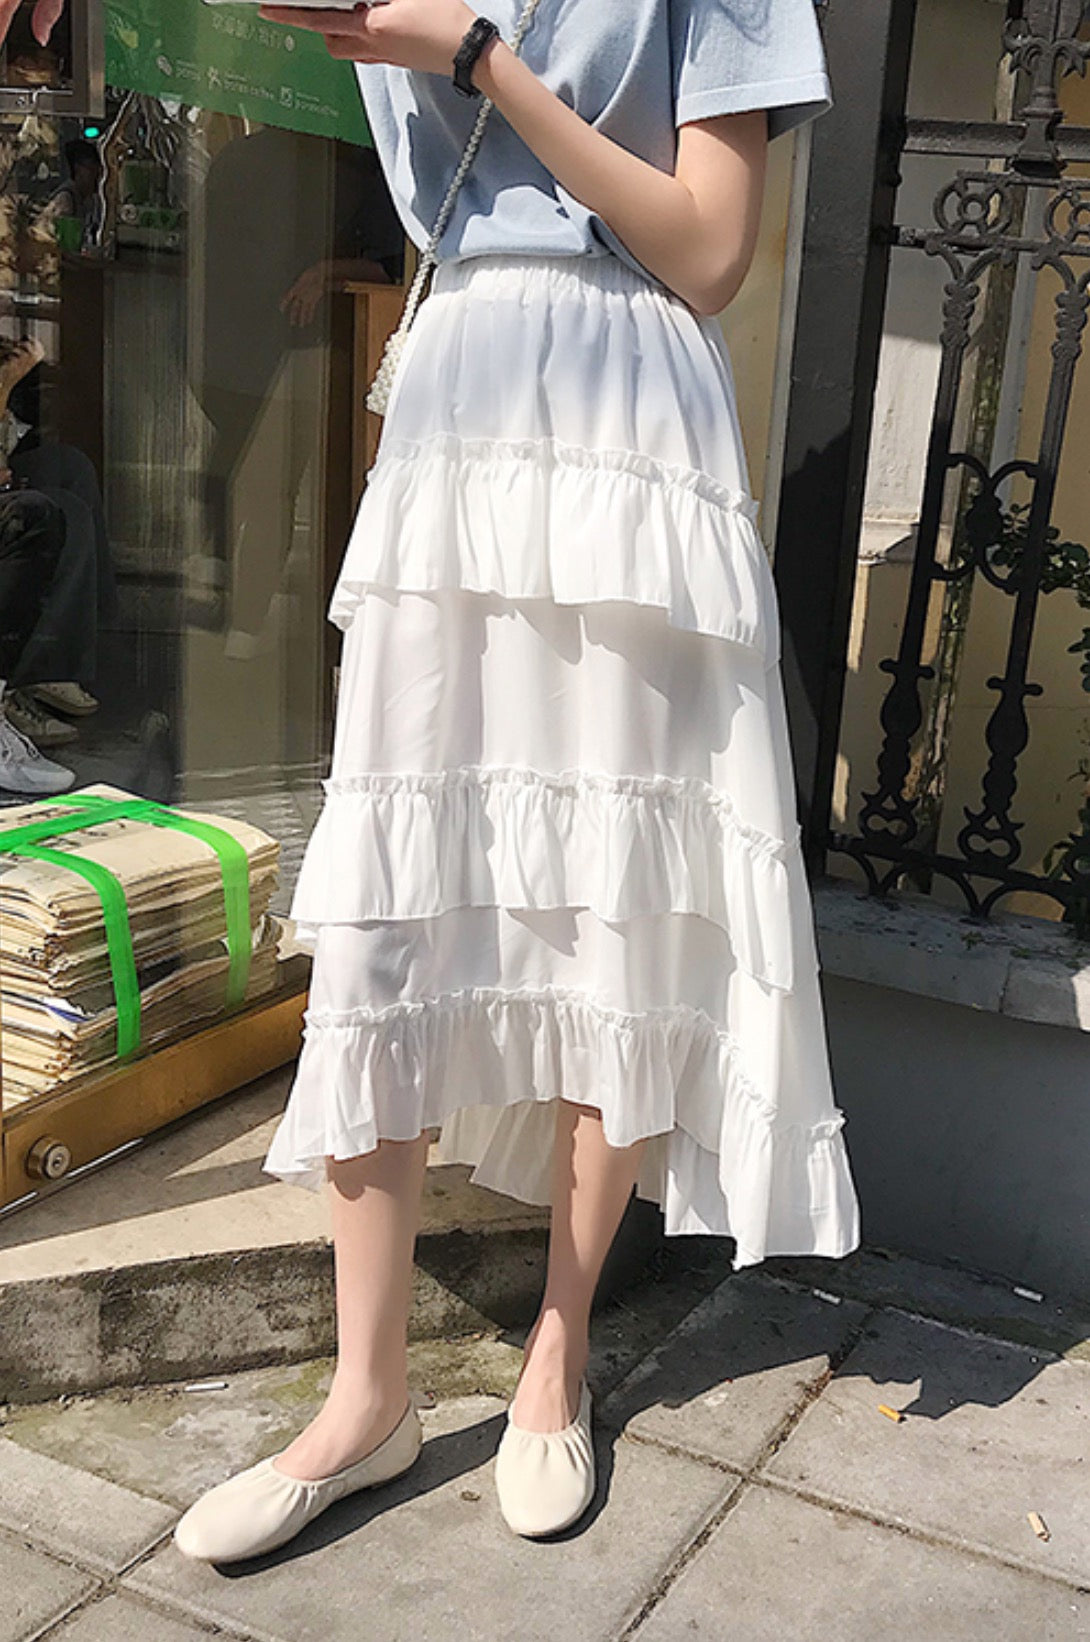 Blackpink Jennie-Inspired White Layered Ruffle Skirt